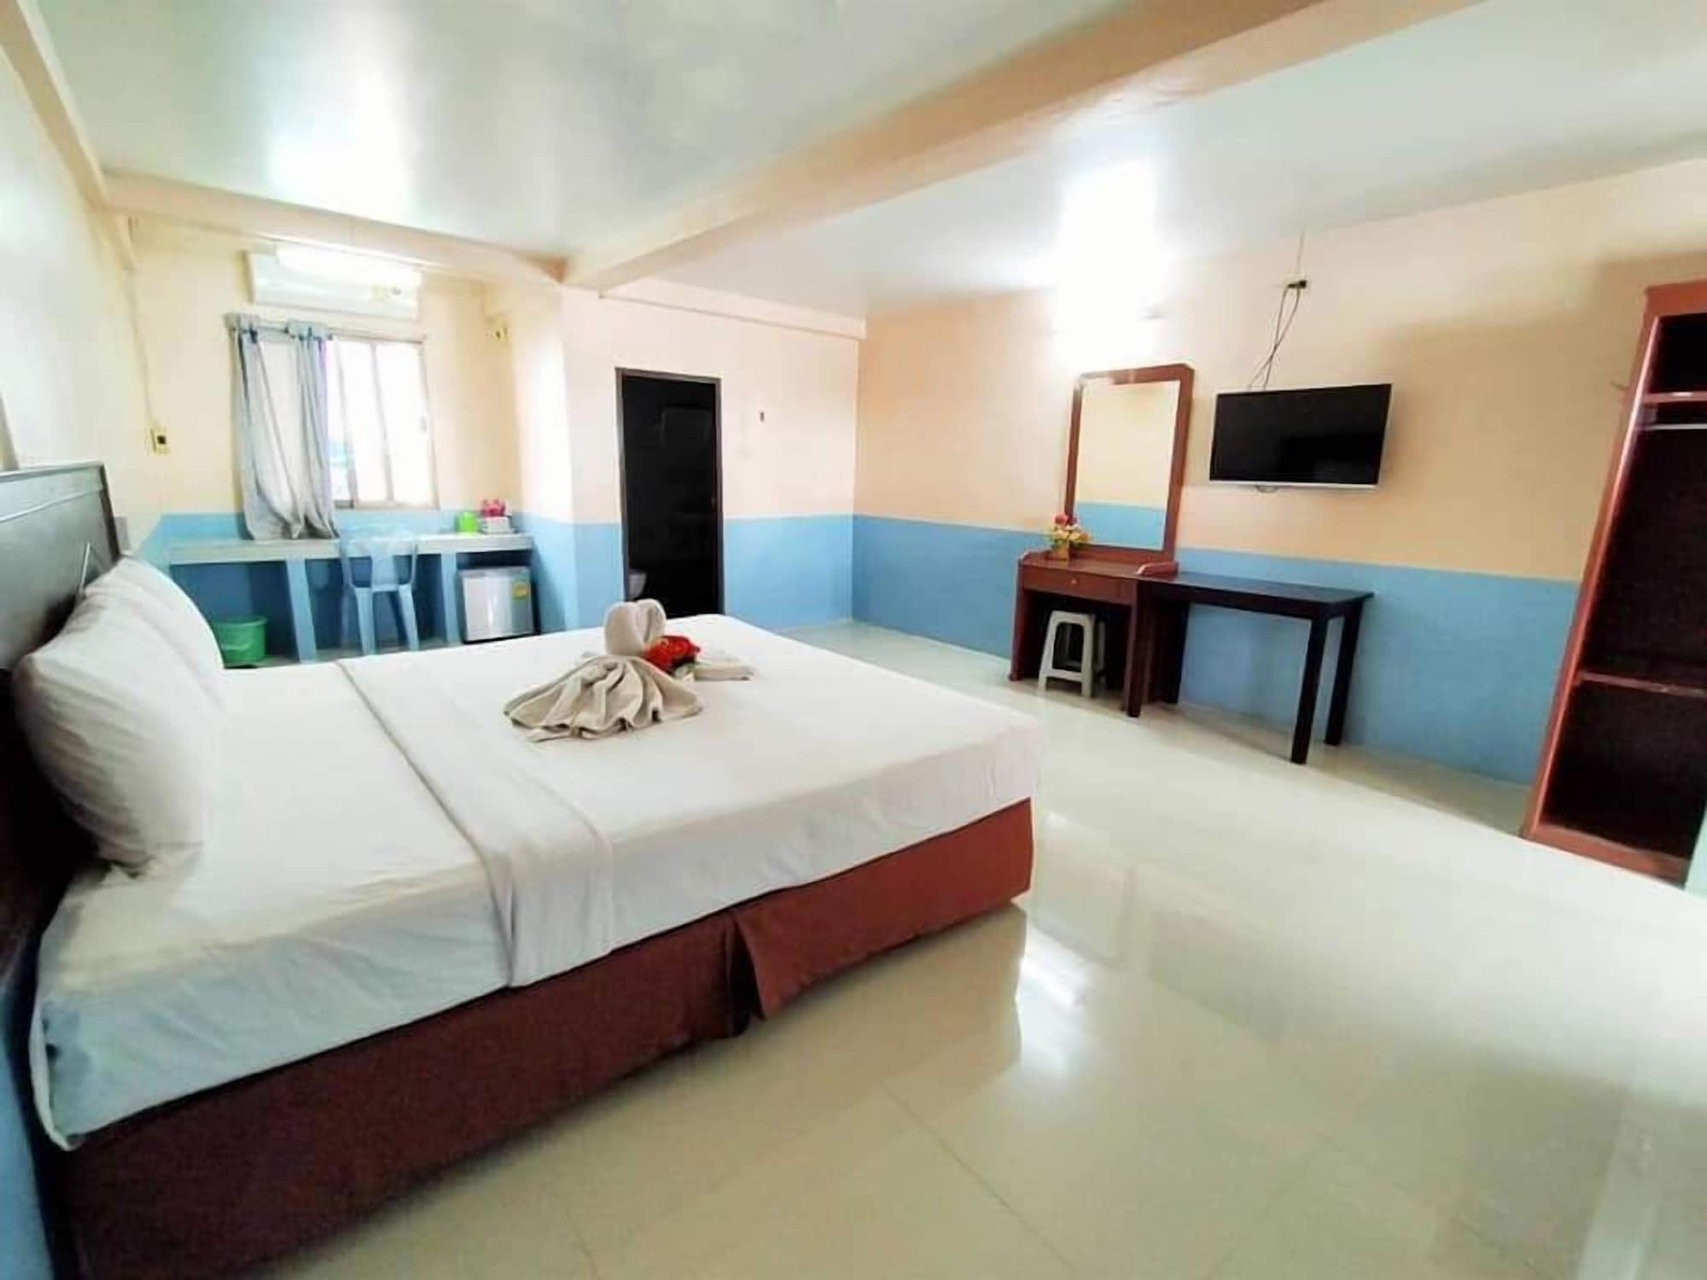 Bedroom 3, Station Hotel, Muang Trang